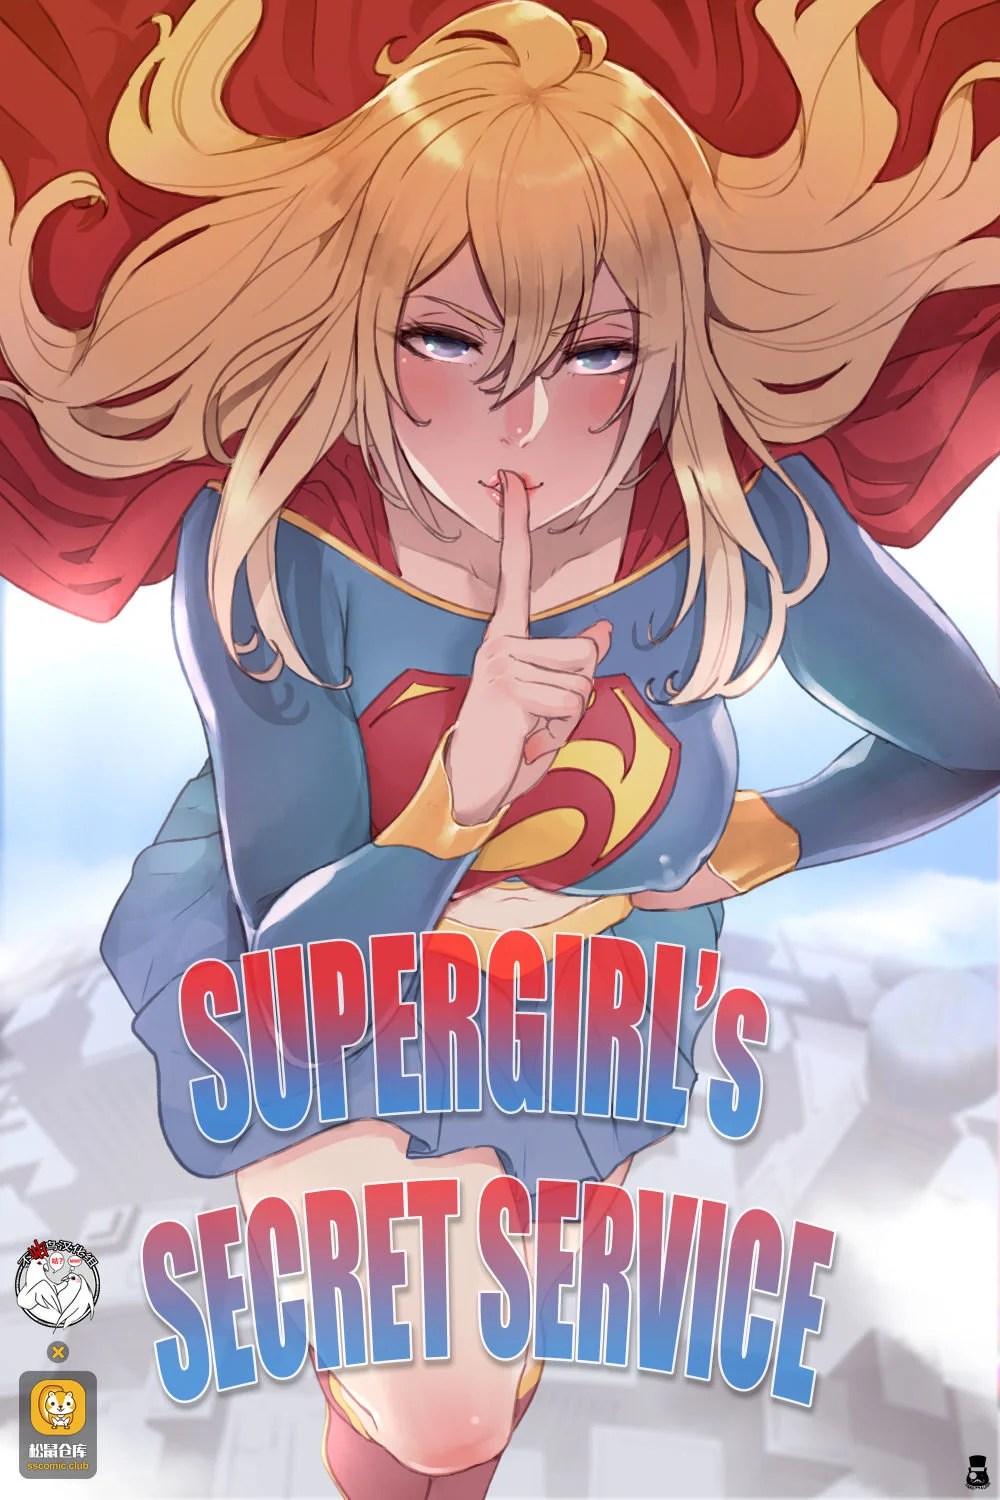 Supergirl’s Secret Service – Mr.takealook - 8482684636cc9cda5c9d161ffa7a1304